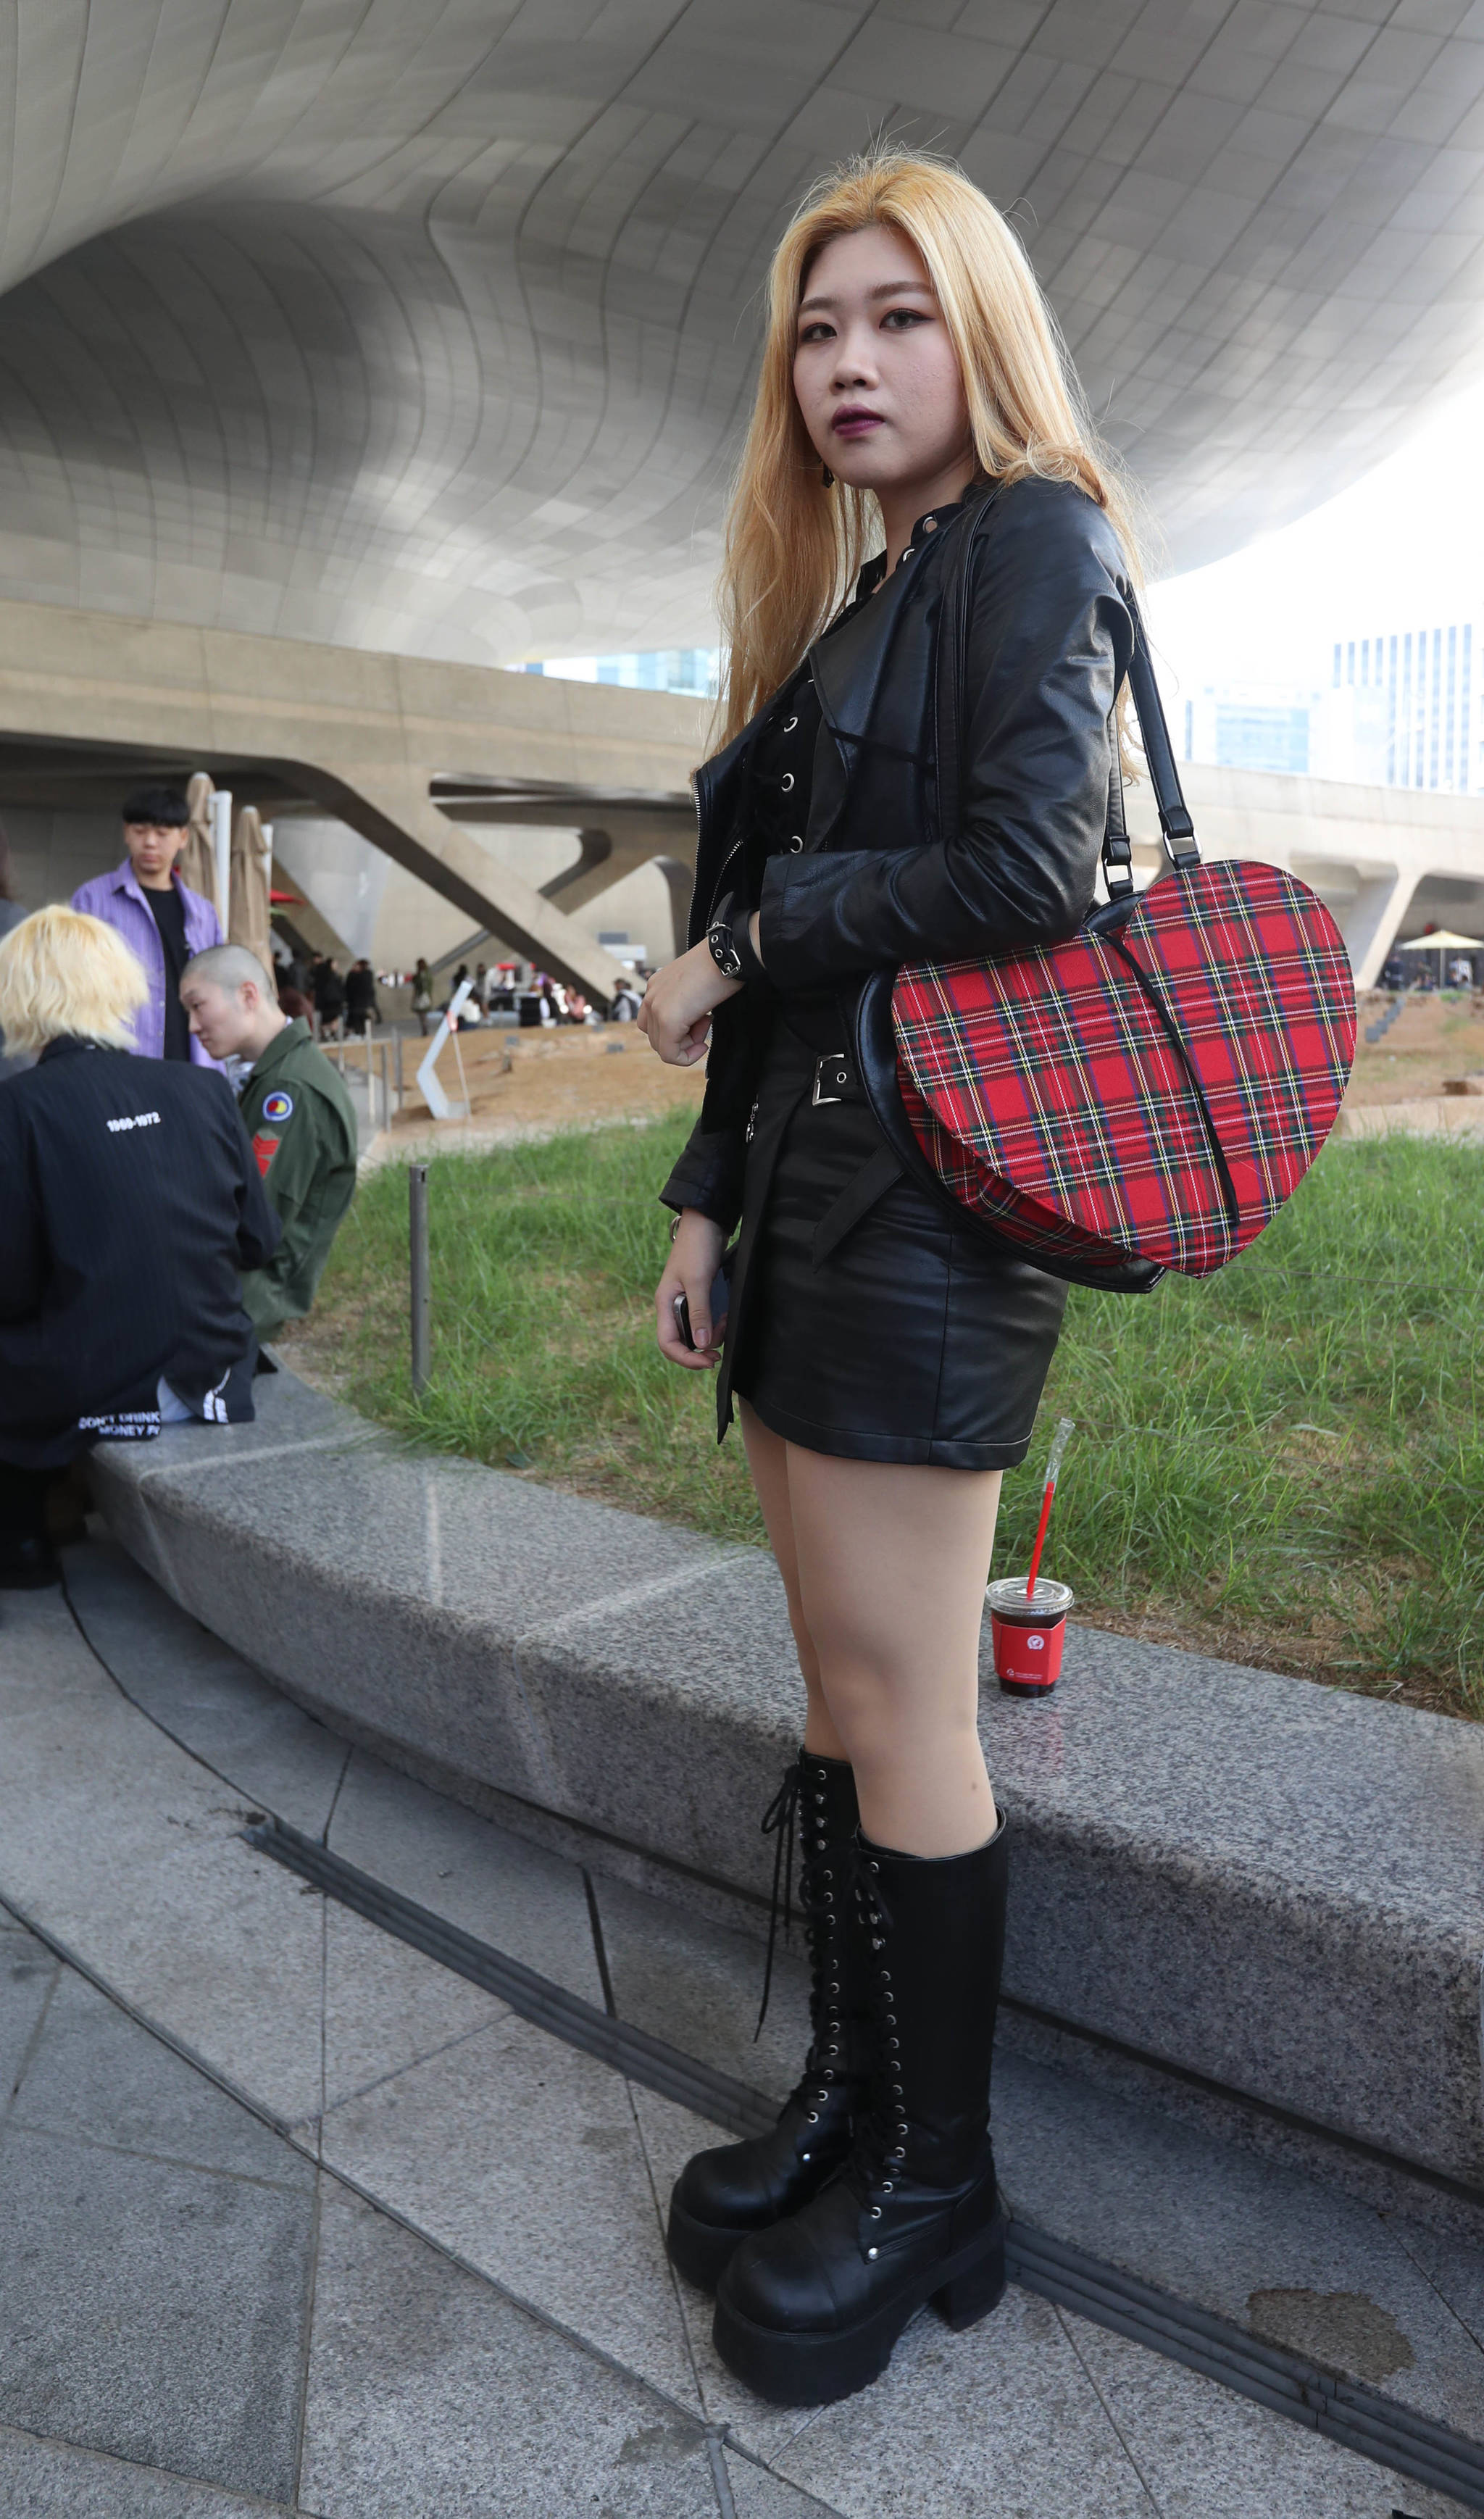 고딕룩(Gothic Look) 스타일을 하고 있는 이영신(23)씨는 이 패션 스타일을 좋아한다고 했다. 가방은 미국에서 신발은 일본에서 구입했다고 했다. 신인섭 기자